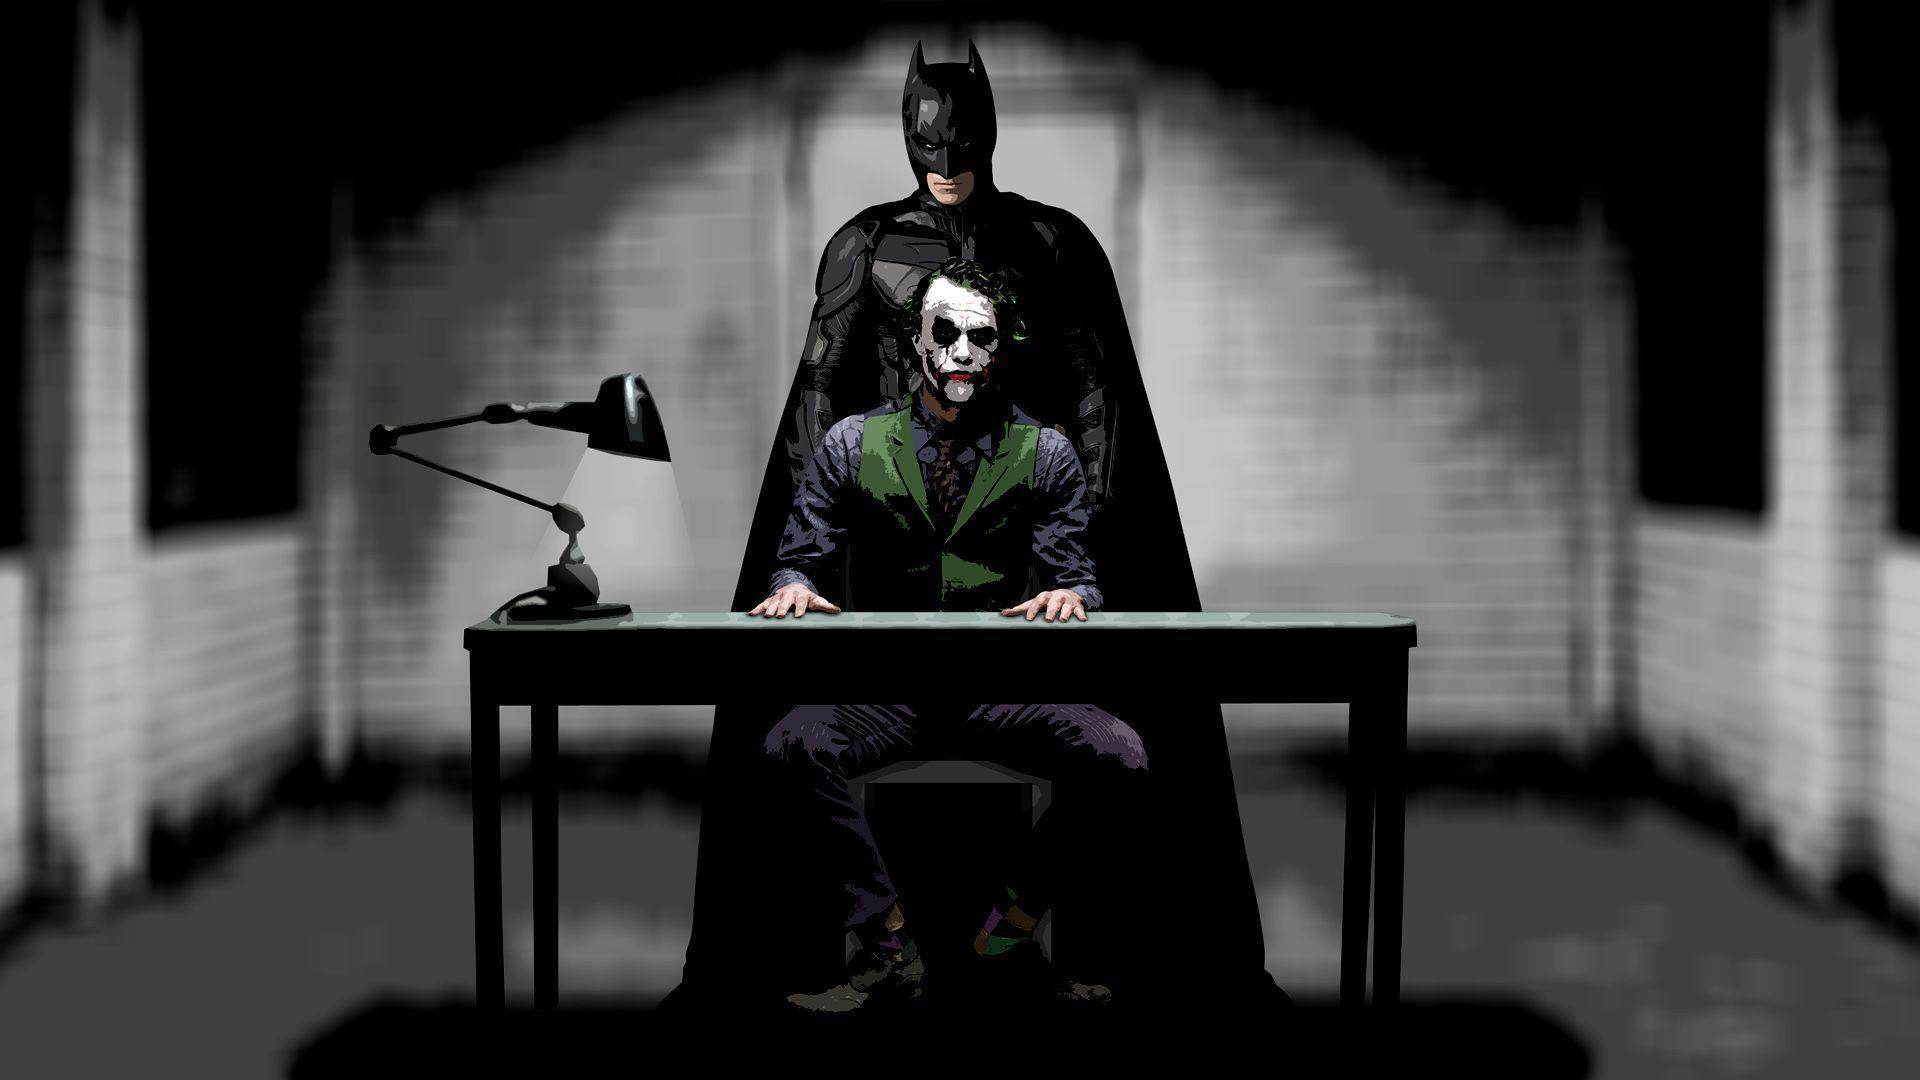 Wallpaper For > Batman Joker Wallpaper HD